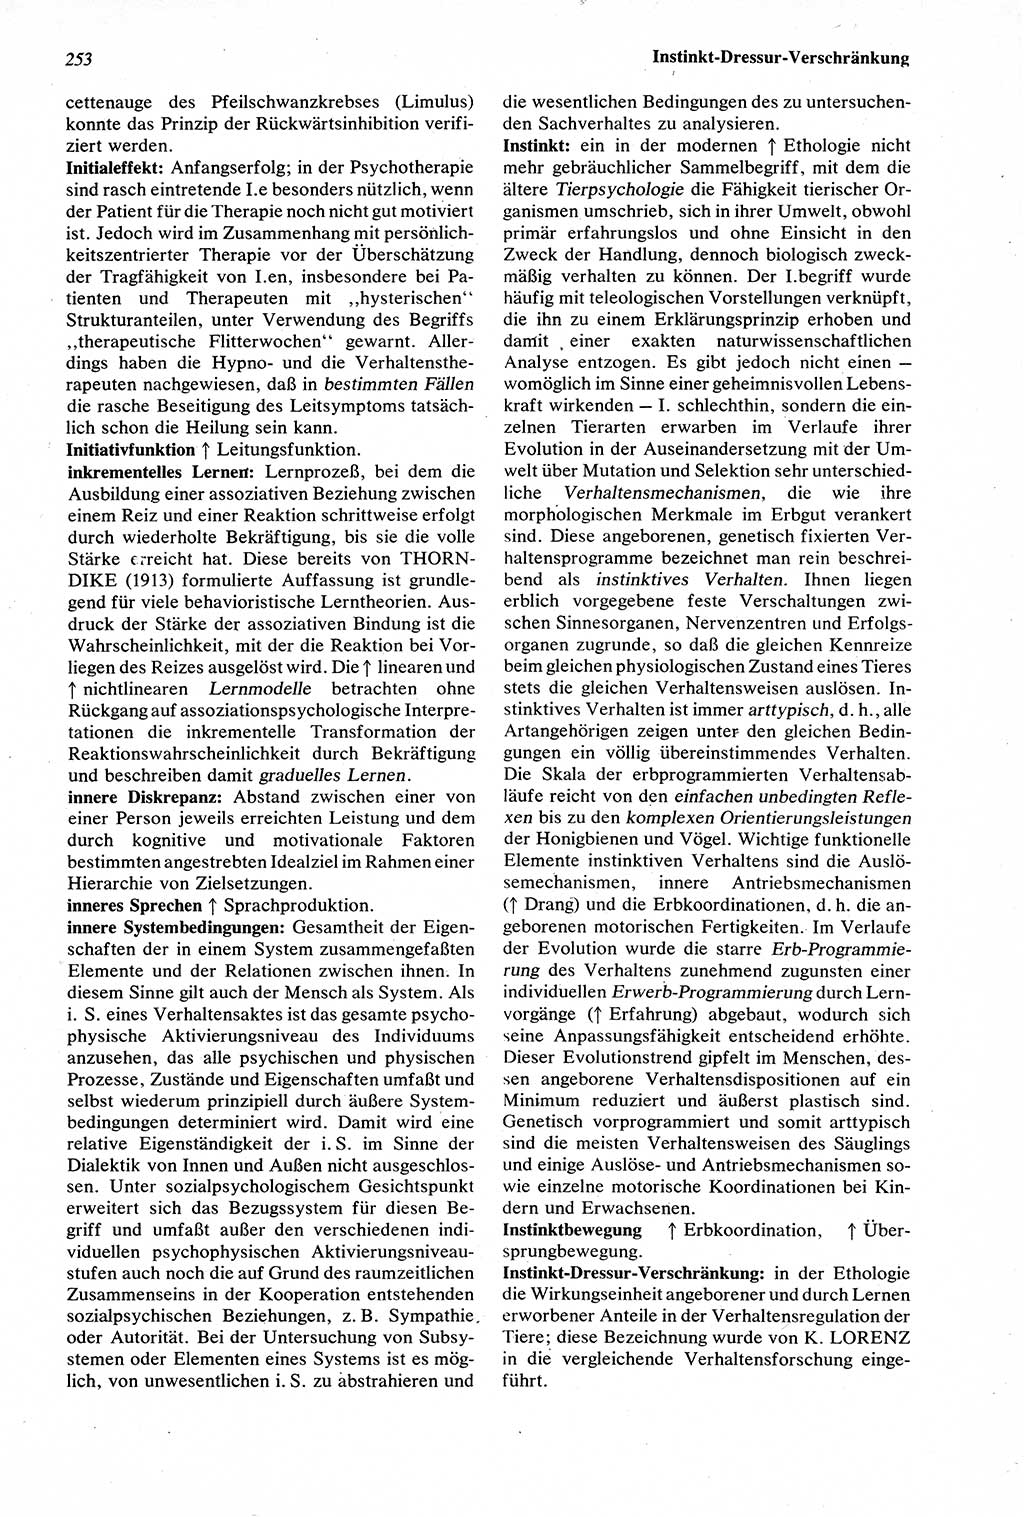 Wörterbuch der Psychologie [Deutsche Demokratische Republik (DDR)] 1976, Seite 253 (Wb. Psych. DDR 1976, S. 253)